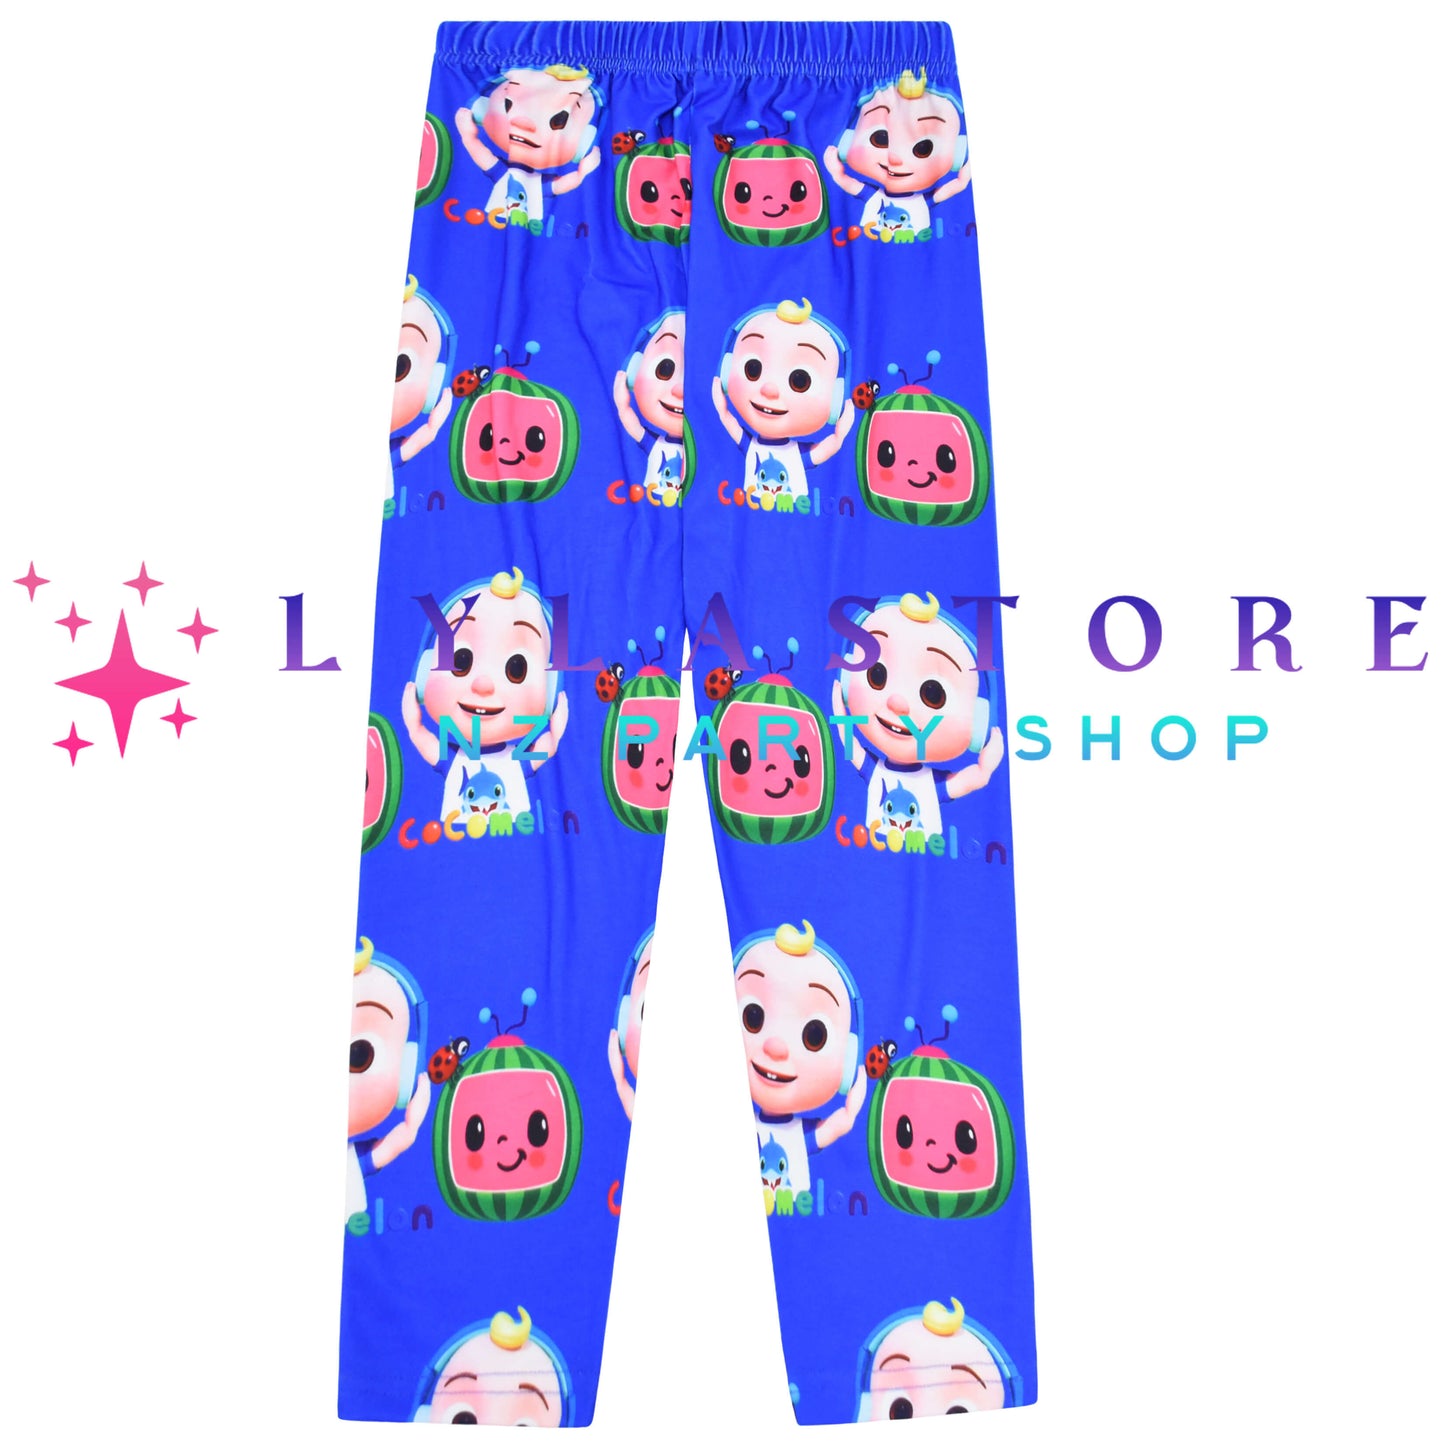 cocomelon-pyjama-costume-birthday-lylastore.com